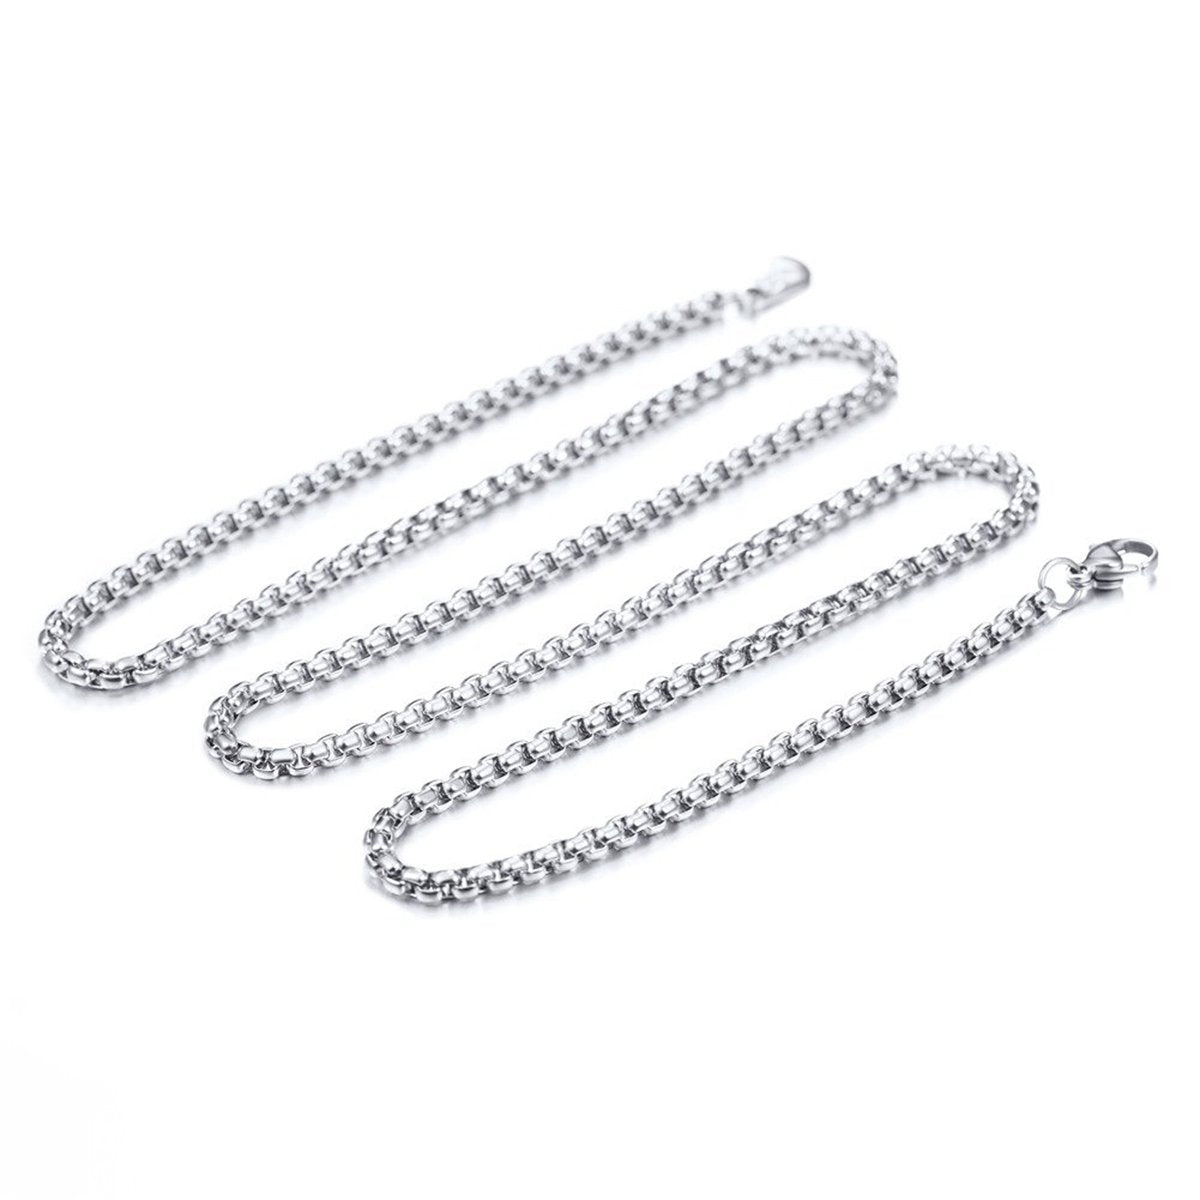 BOSS MATTINI - Necklace - silver-coloured - Zalando.co.uk